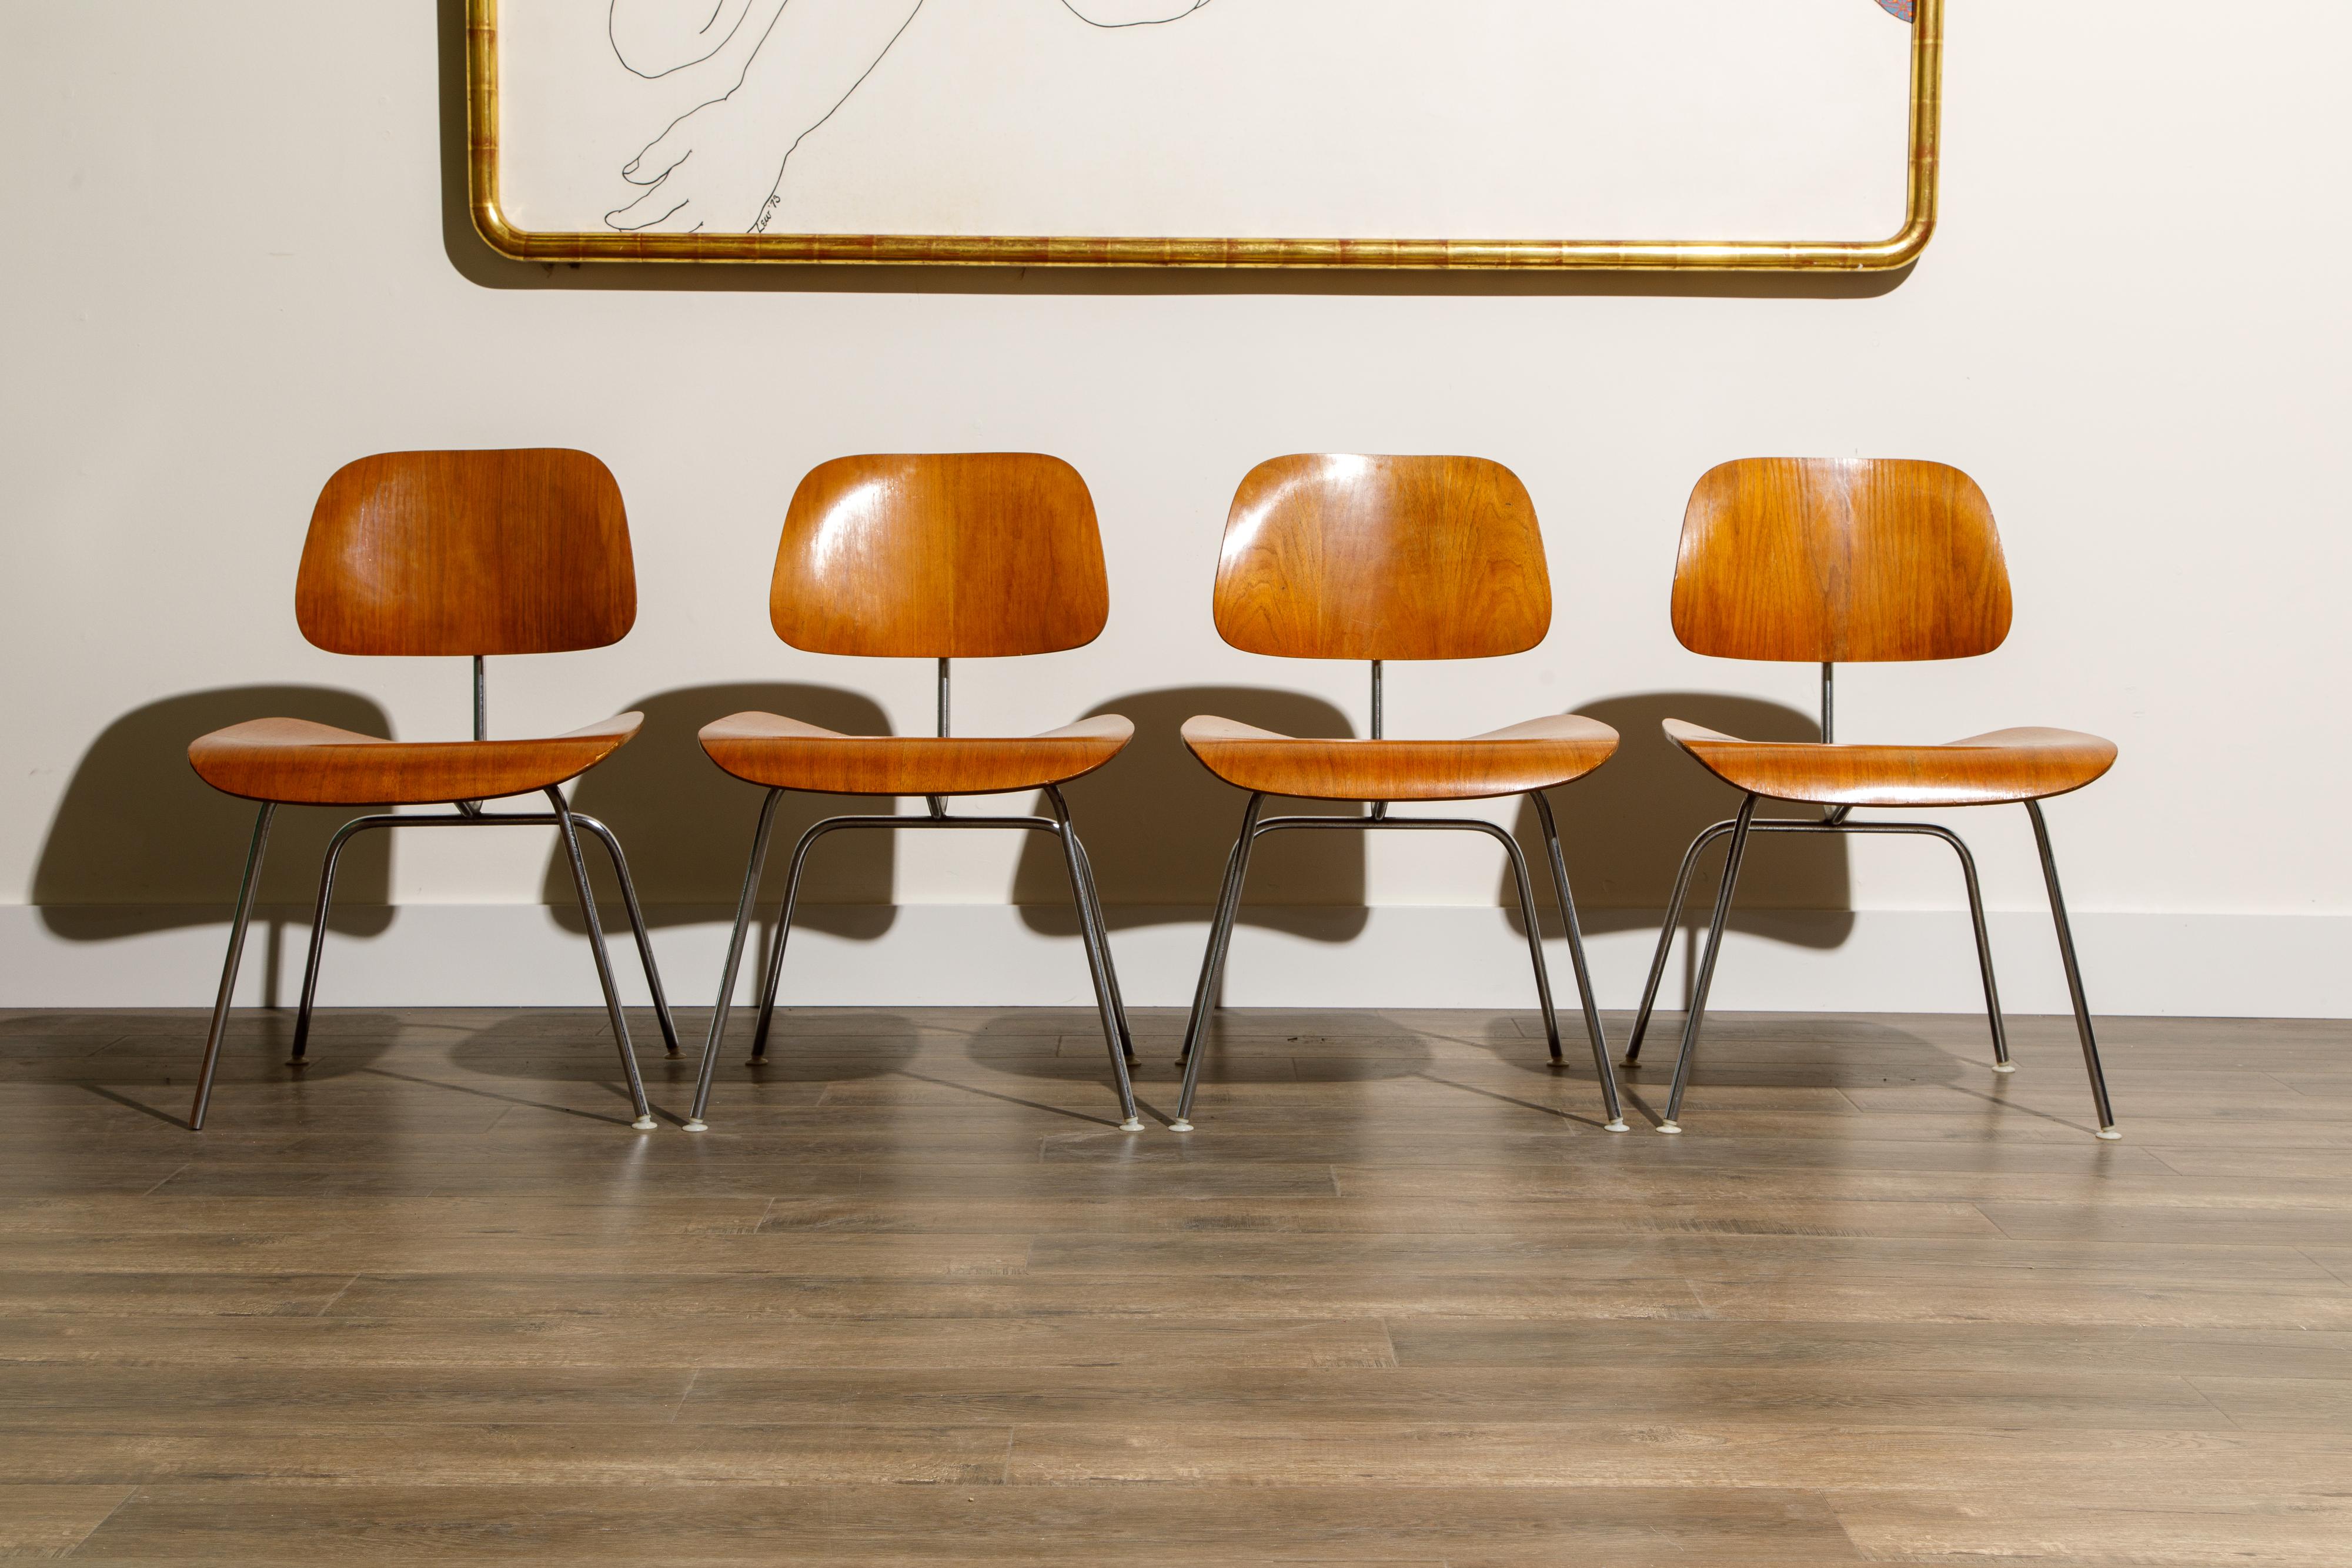 Cet ensemble de quatre (4) chaises DCM (Dining Chair Metal) de Ray et Charles Eames:: issues des premières années de production d'Herman Millers (1956 à 1959):: sont des pièces de collection et ont beaucoup plus de valeur que les nouveaux modèles de